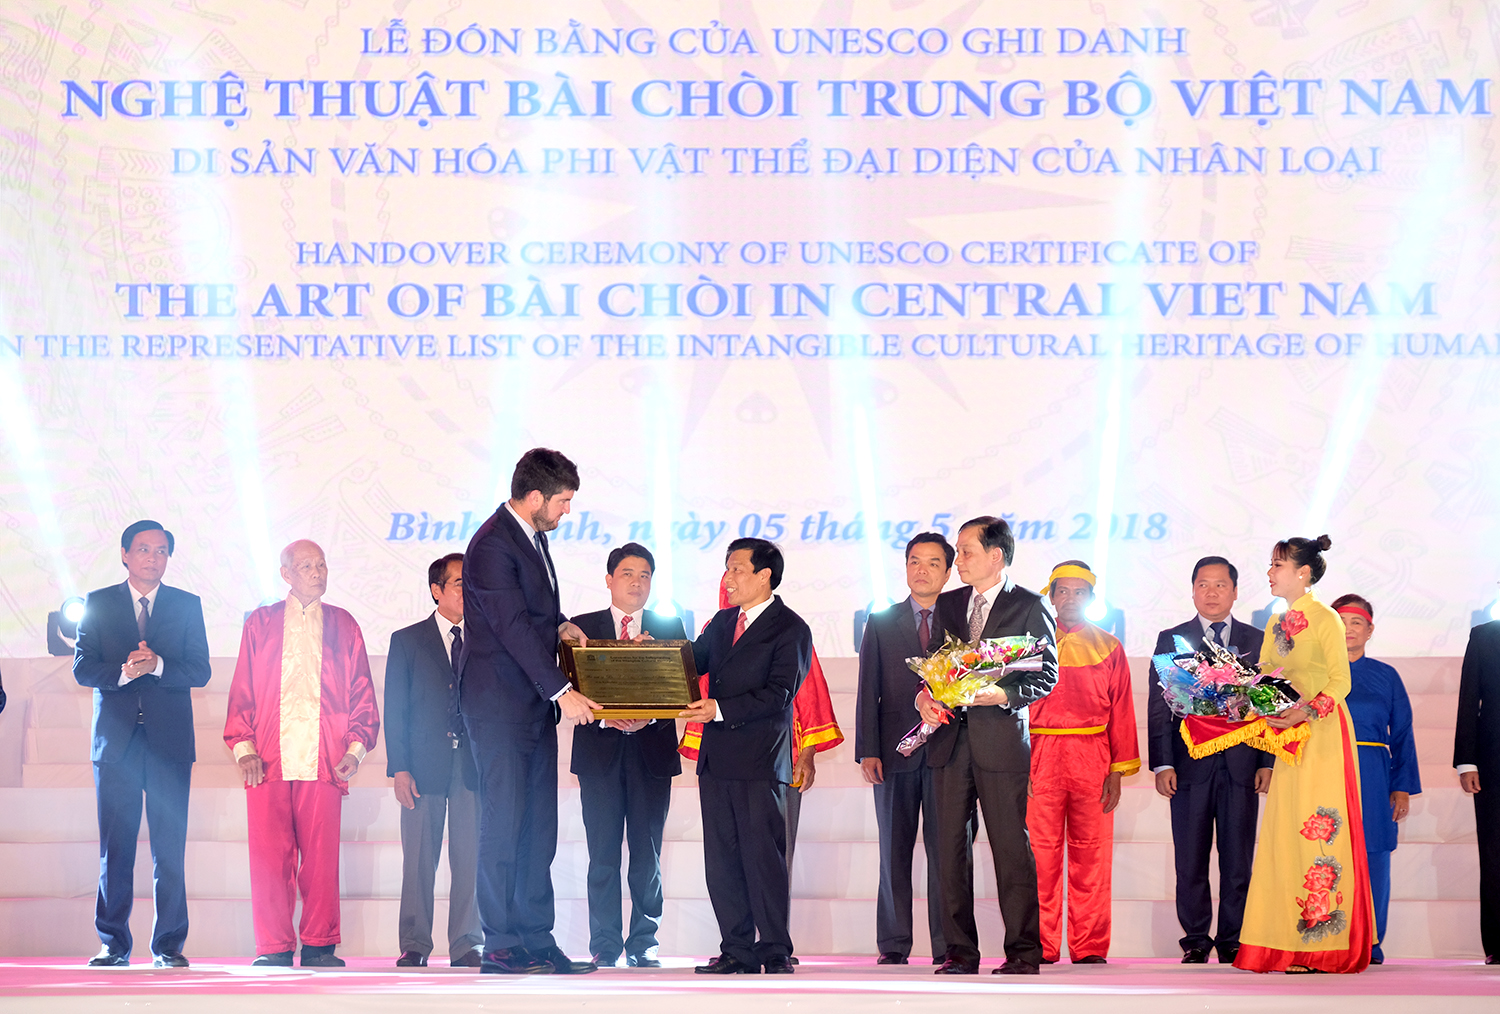 Đại diện UNESCO trao bằng chứng nhận nghệ thuật bài chòi Trung Bộ Việt Nam là di sản văn hóa phi vật thể của nhân loại. Ảnh: VGP